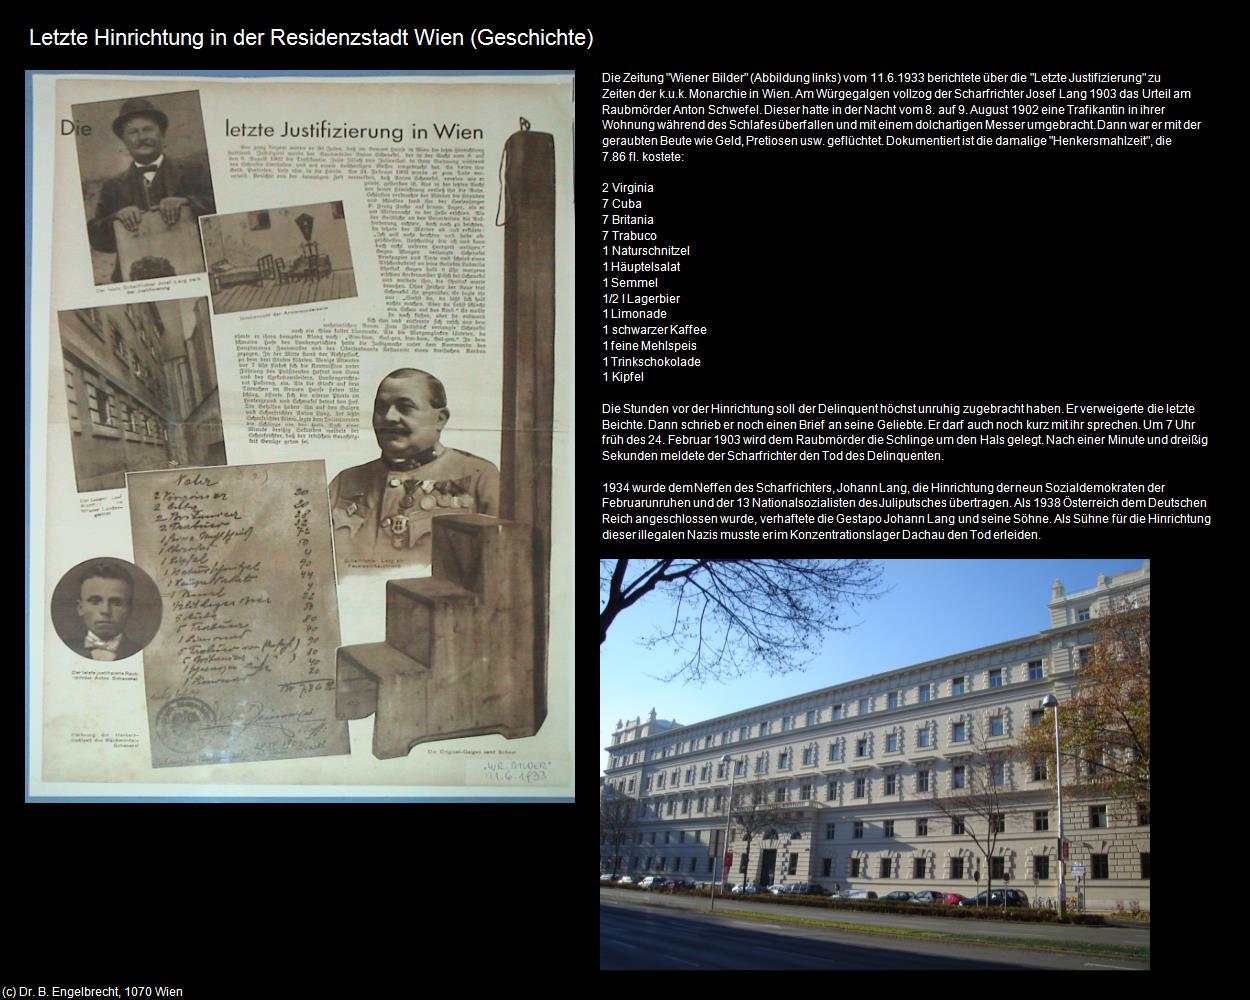 Letzte Hinrichtung in der Residenzstadt Wien  (VIII. Bezirk-Josefstadt) in Kulturatlas-WIEN